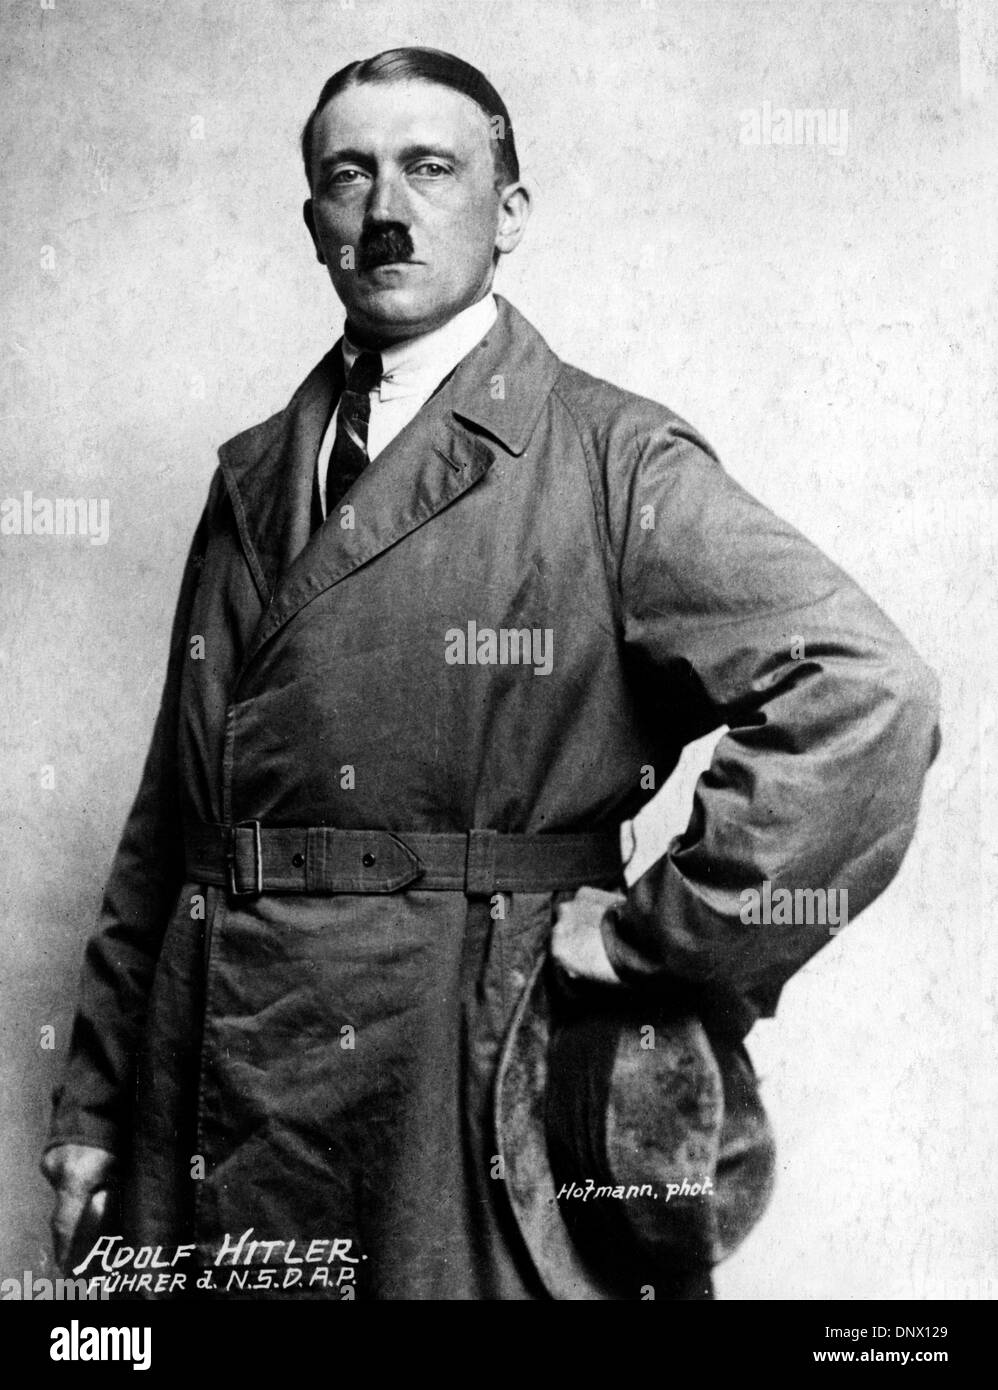 6 giugno 1920 - Berlino, Germania - originale ritratto del leader nazista ADOLF HITLER (1889-1945) nel 1920. Hitler era il Führer della Germania dal 1934 - 1945. (Credito Immagine: © Keystone foto/ZUMAPRESS.com) Foto Stock